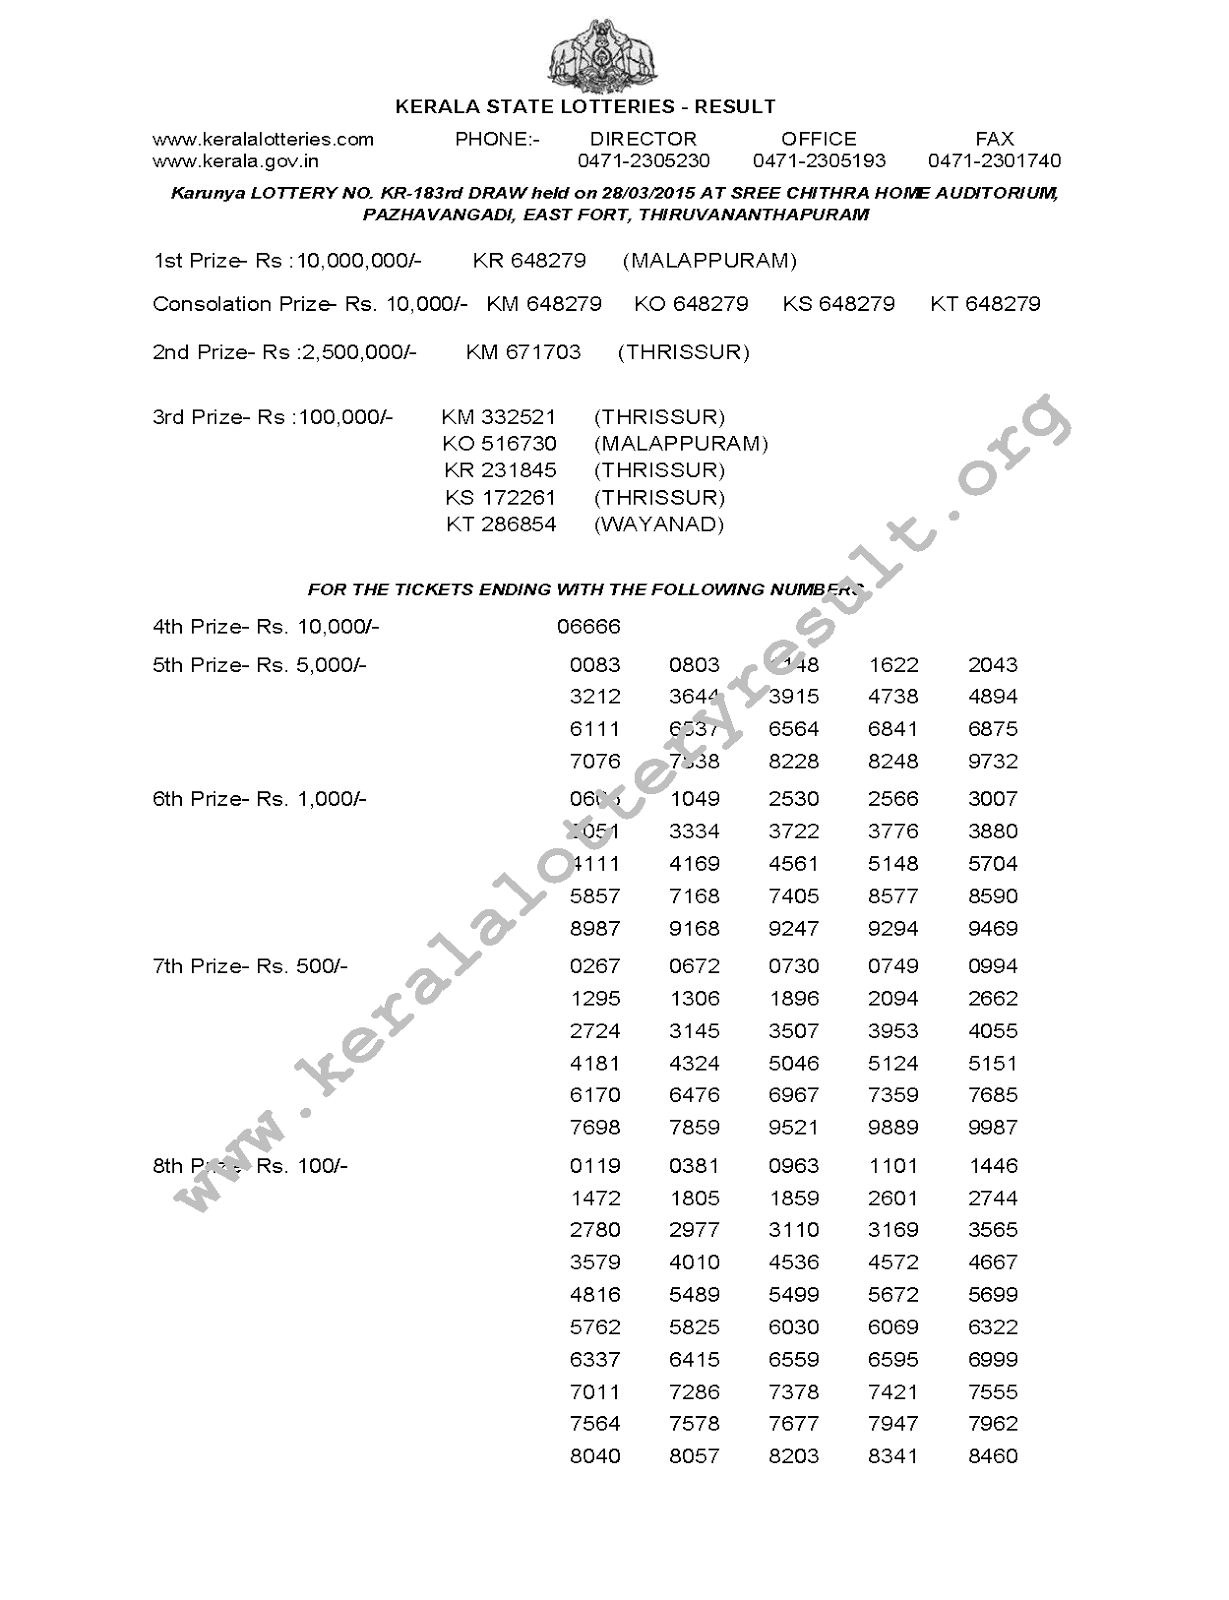 KARUNYA Lottery KR 183 Result 28-3-2015